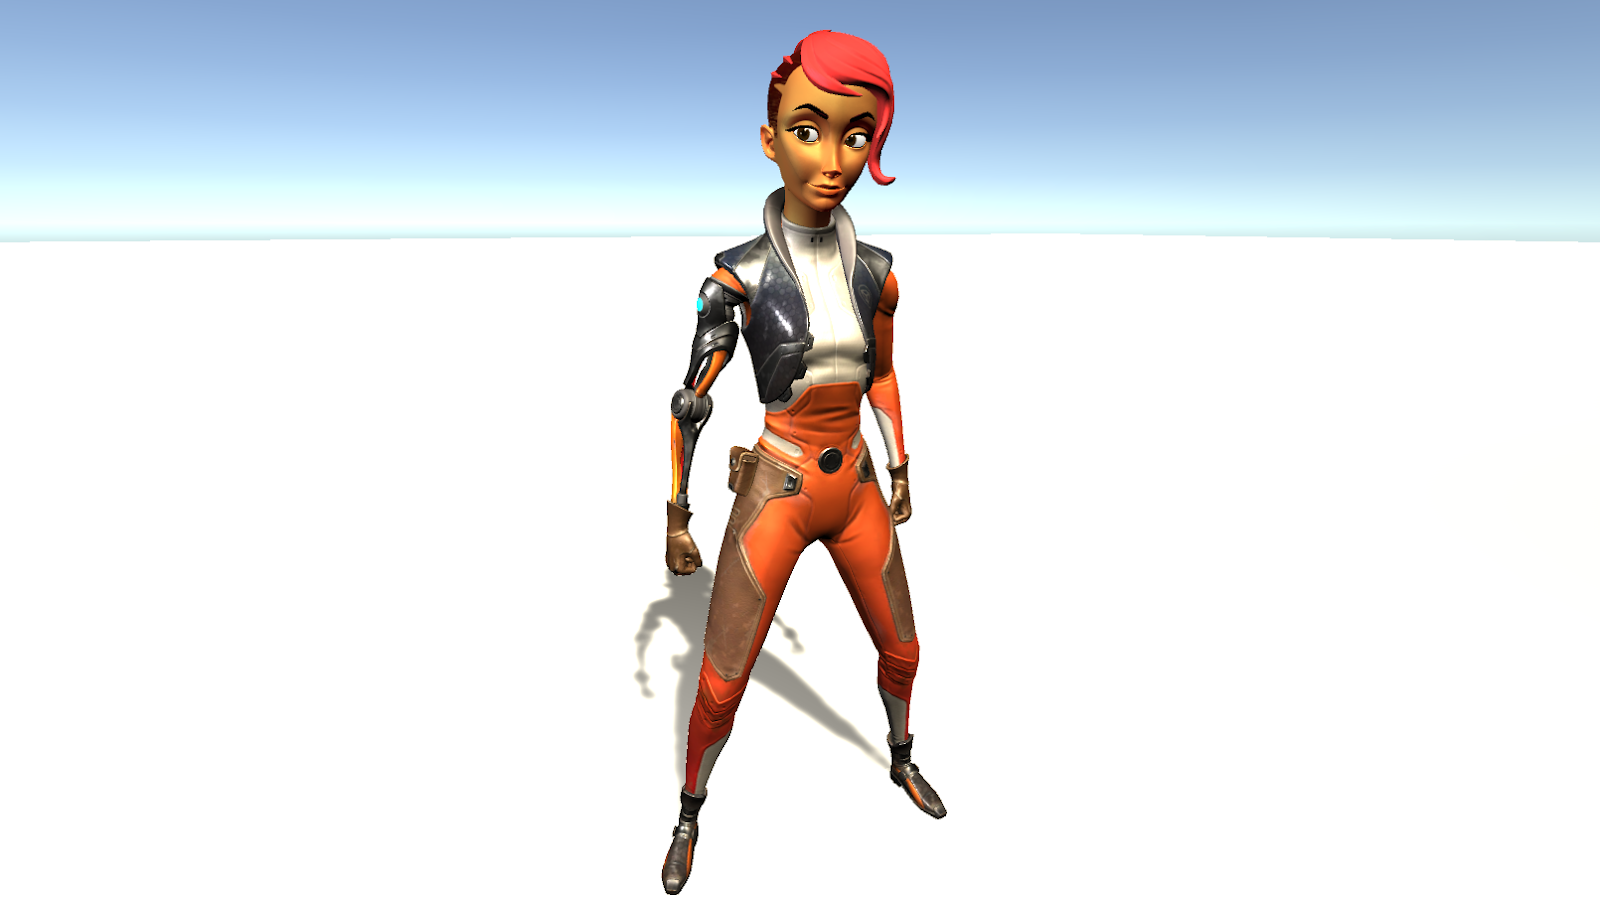 最终的3D模型角色在白色平面上以站立状态站立。